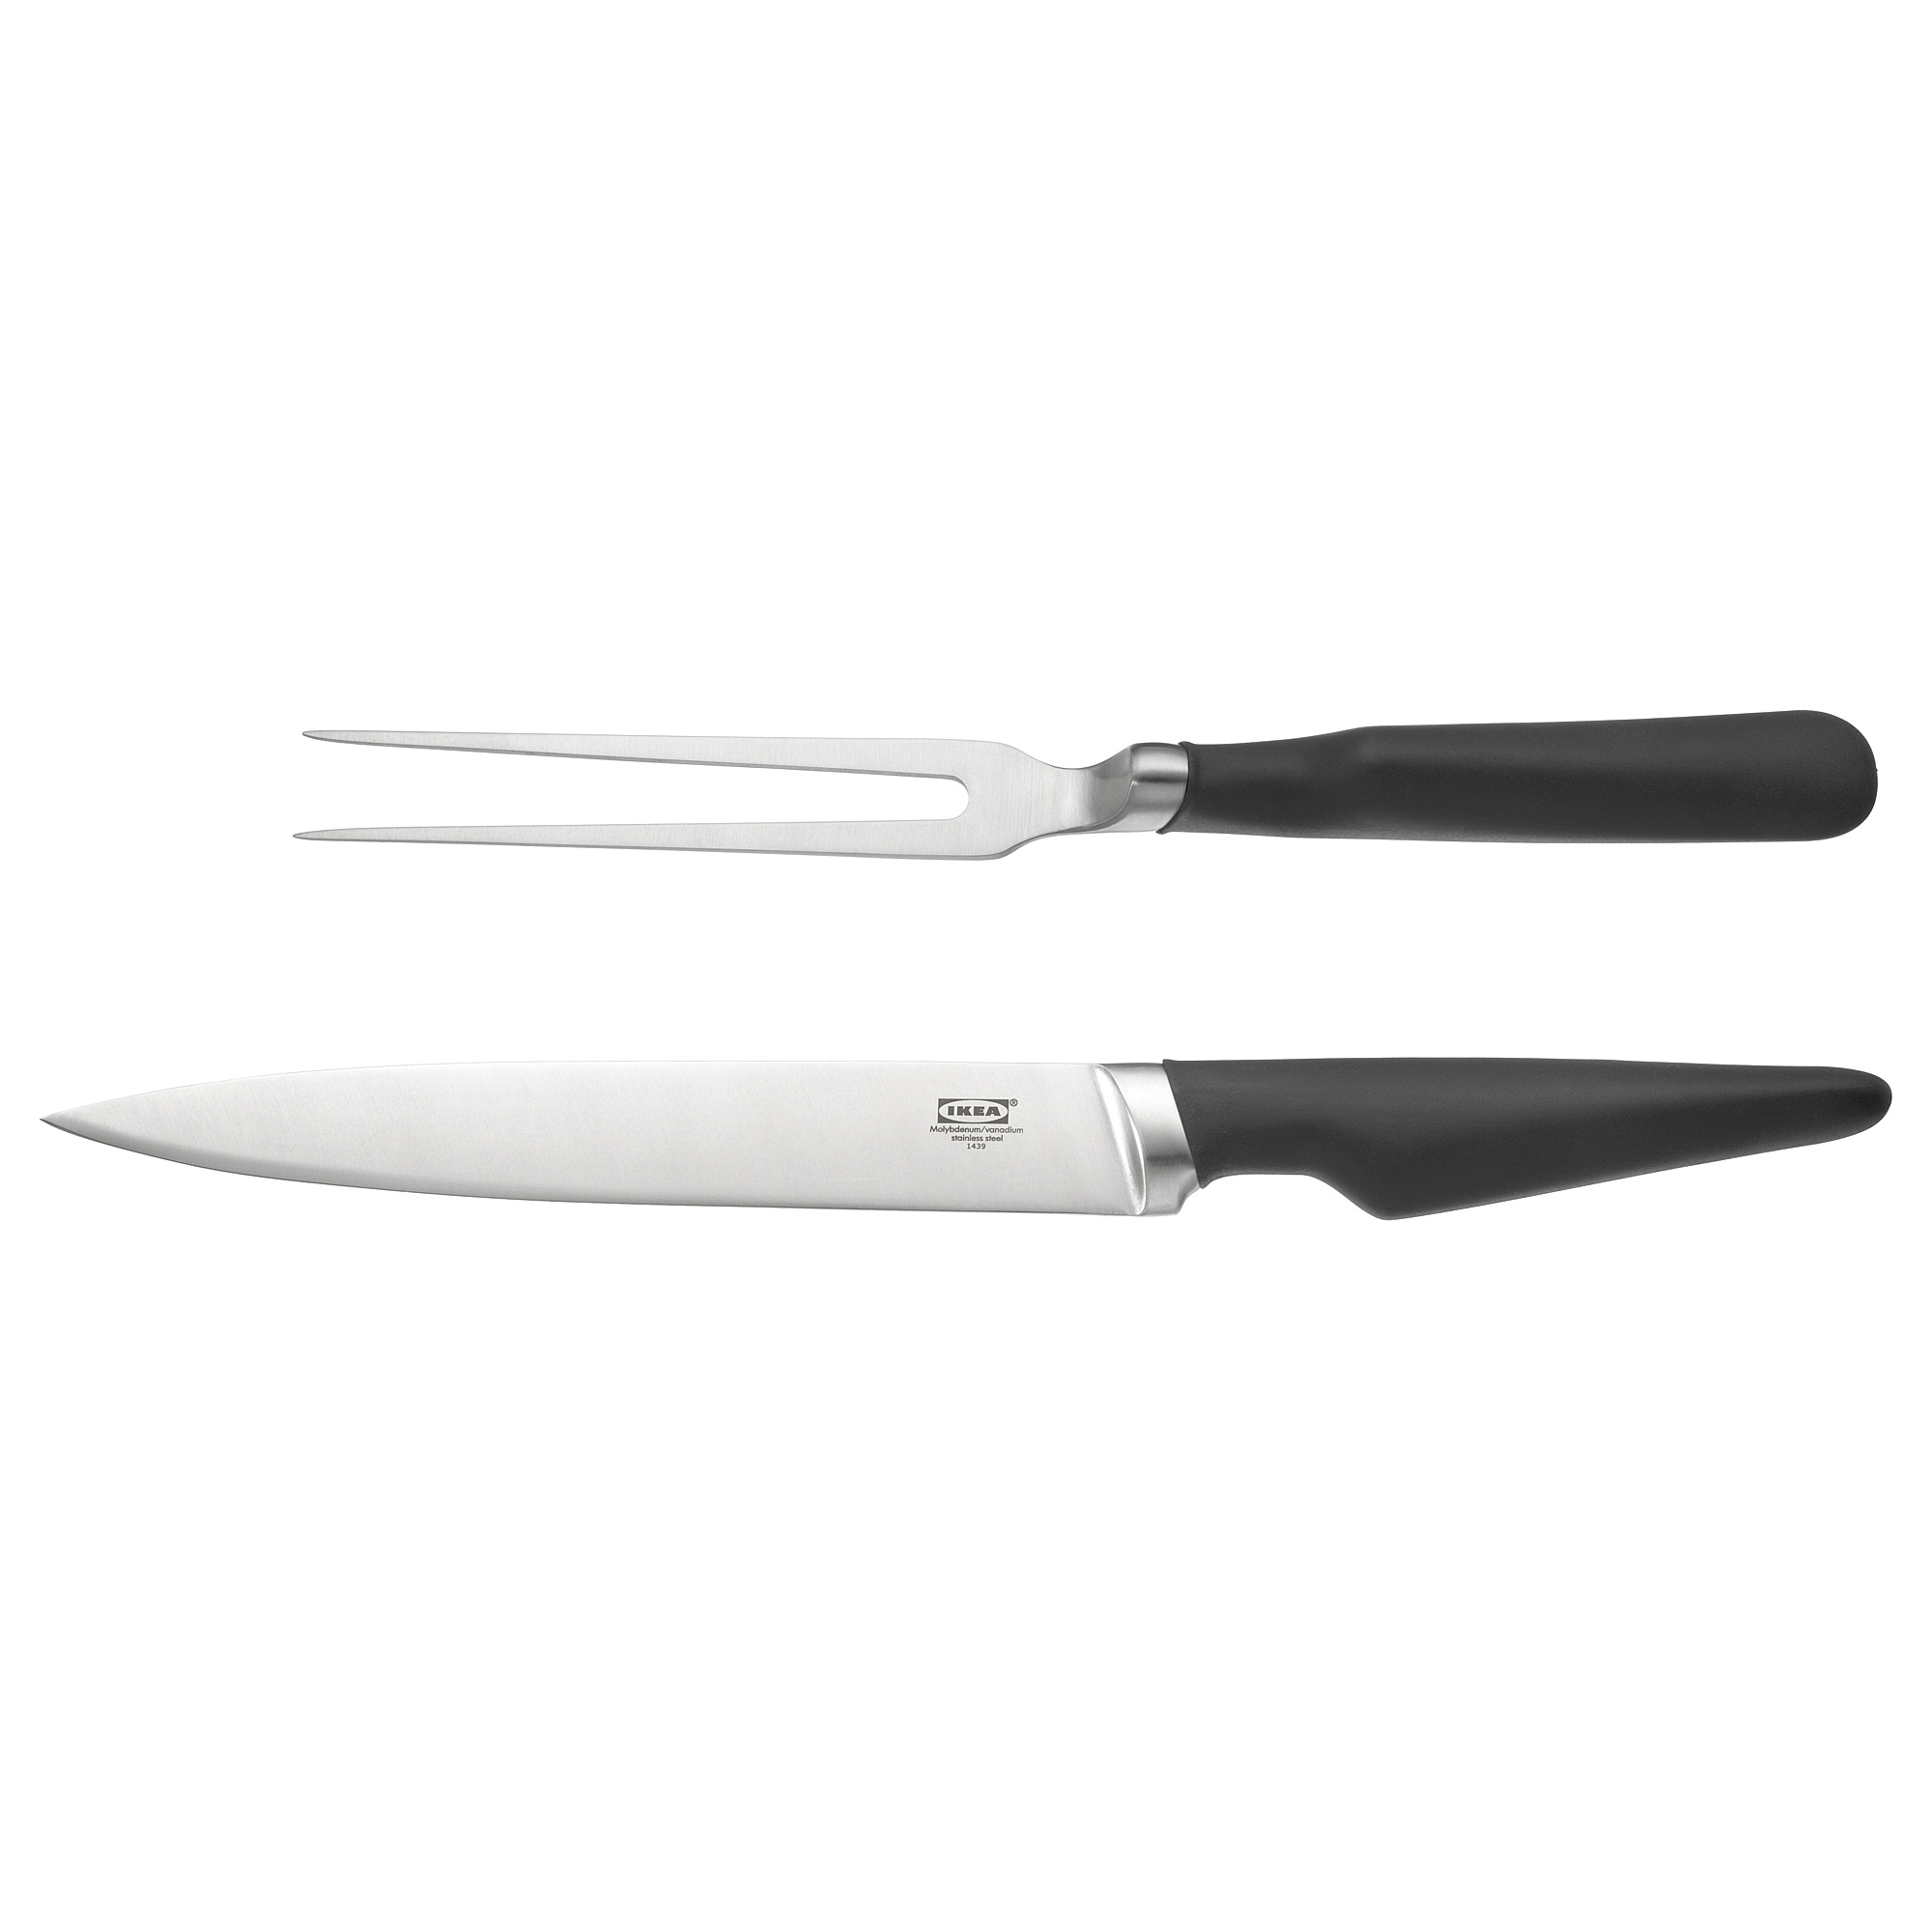 VÖRDA carving fork and carving knife